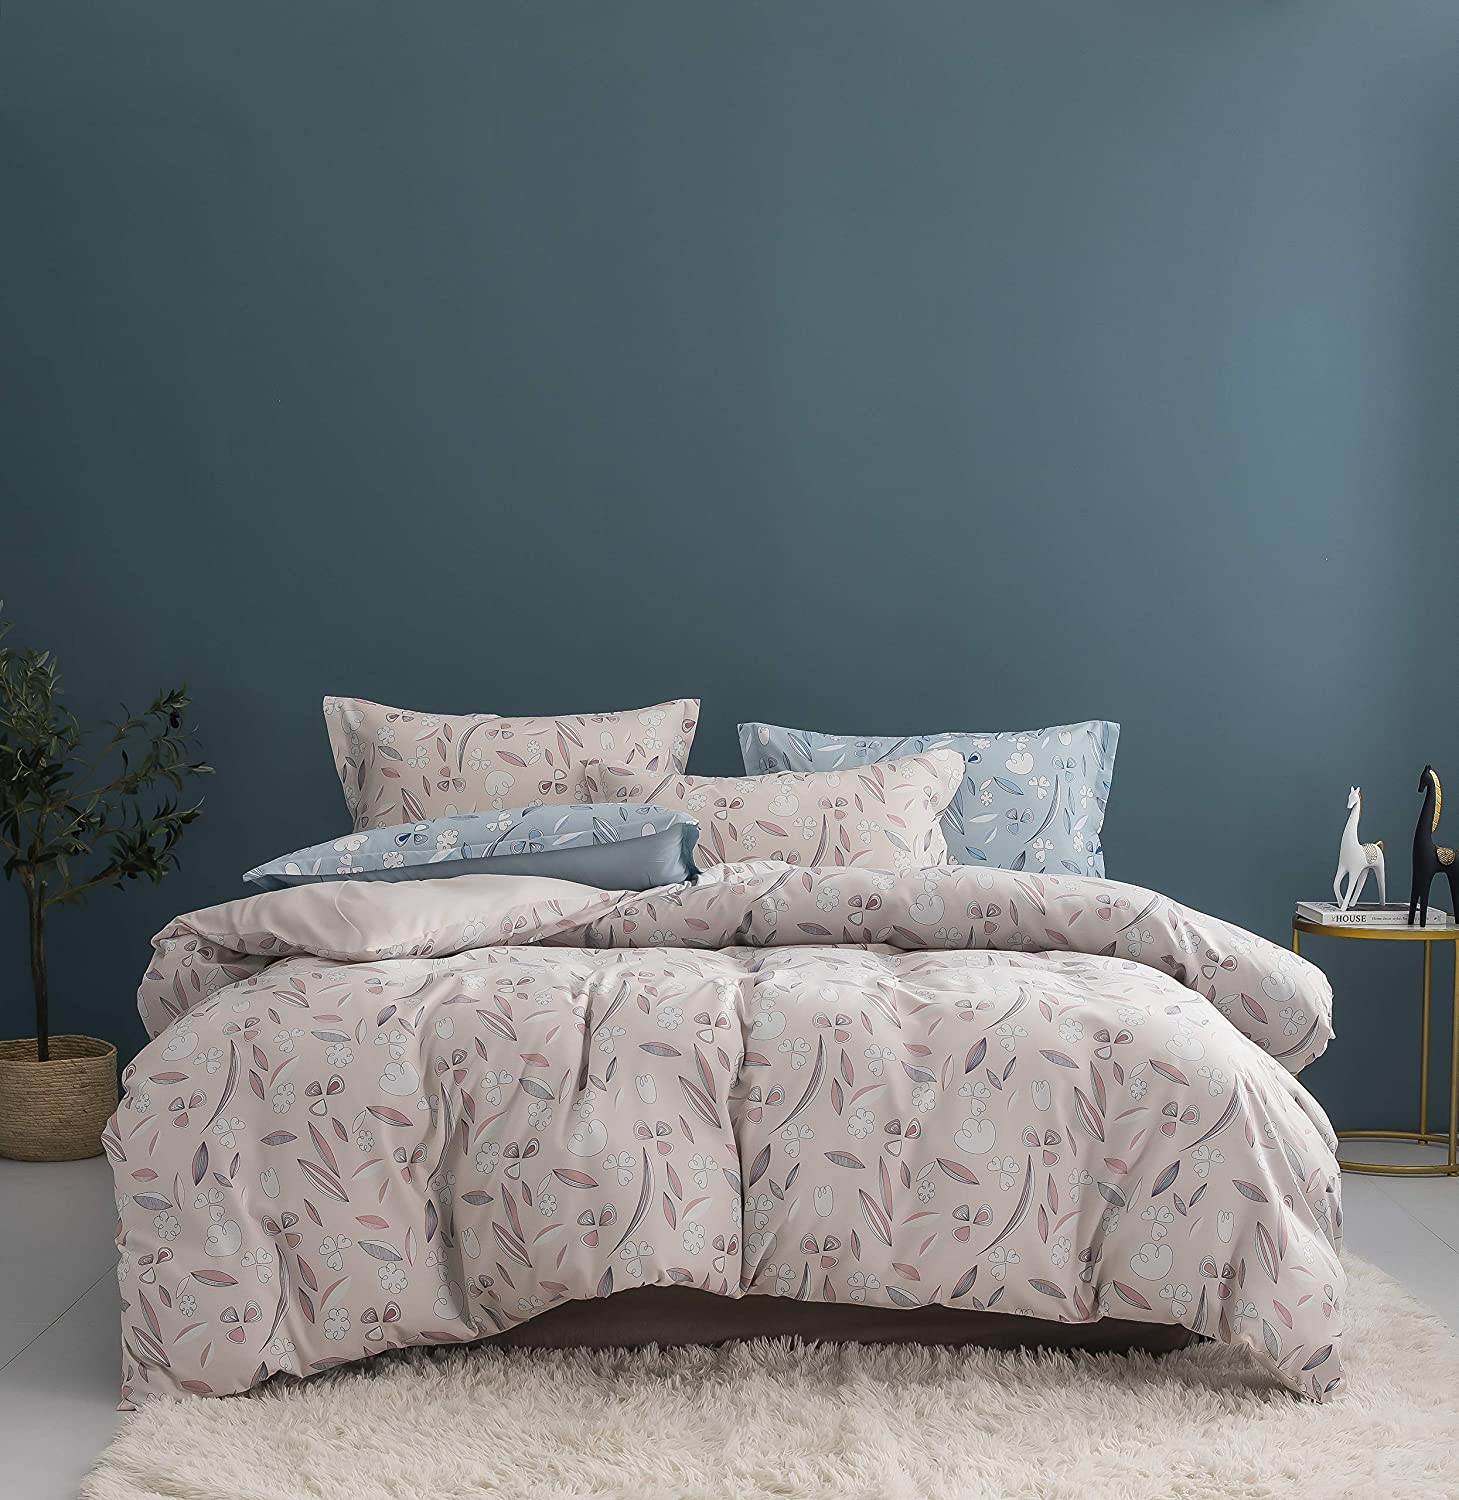 Details about   Homebox Comforter Cover Set 3 Piece Leaf Print Pattern King Bedding Soft Brushed